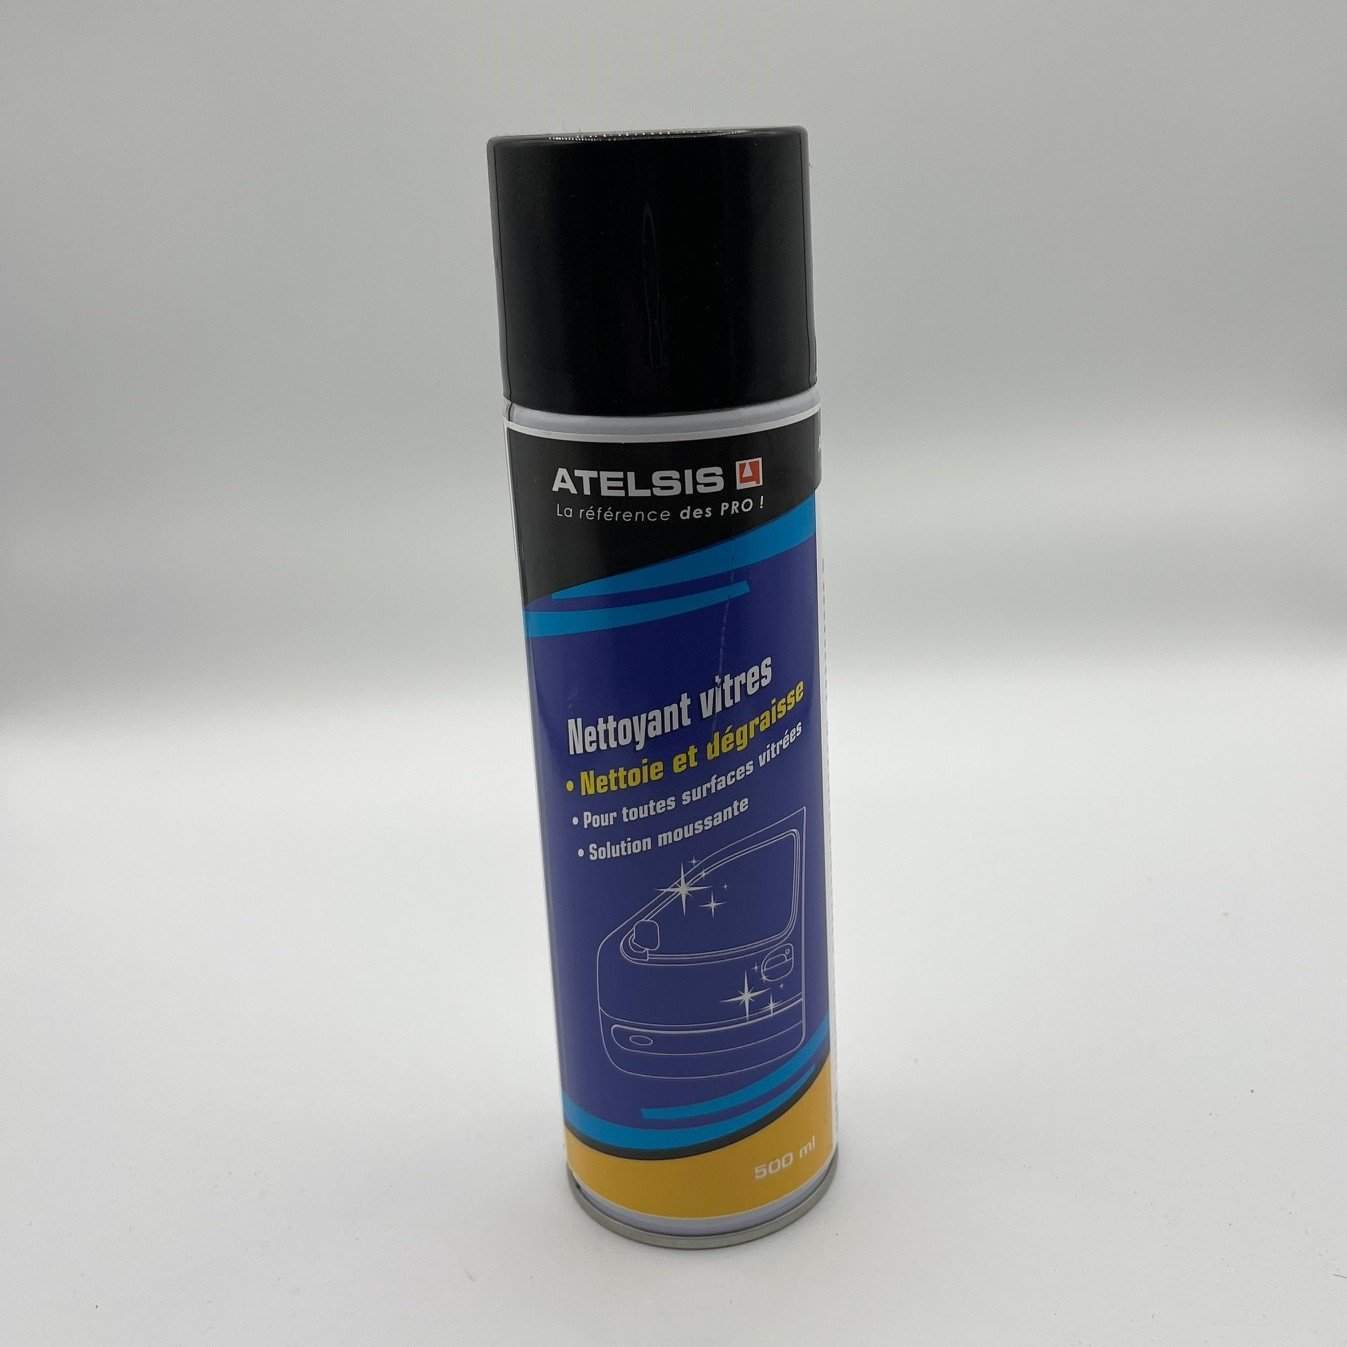 Spray Nettoyant Vitres (500ml)